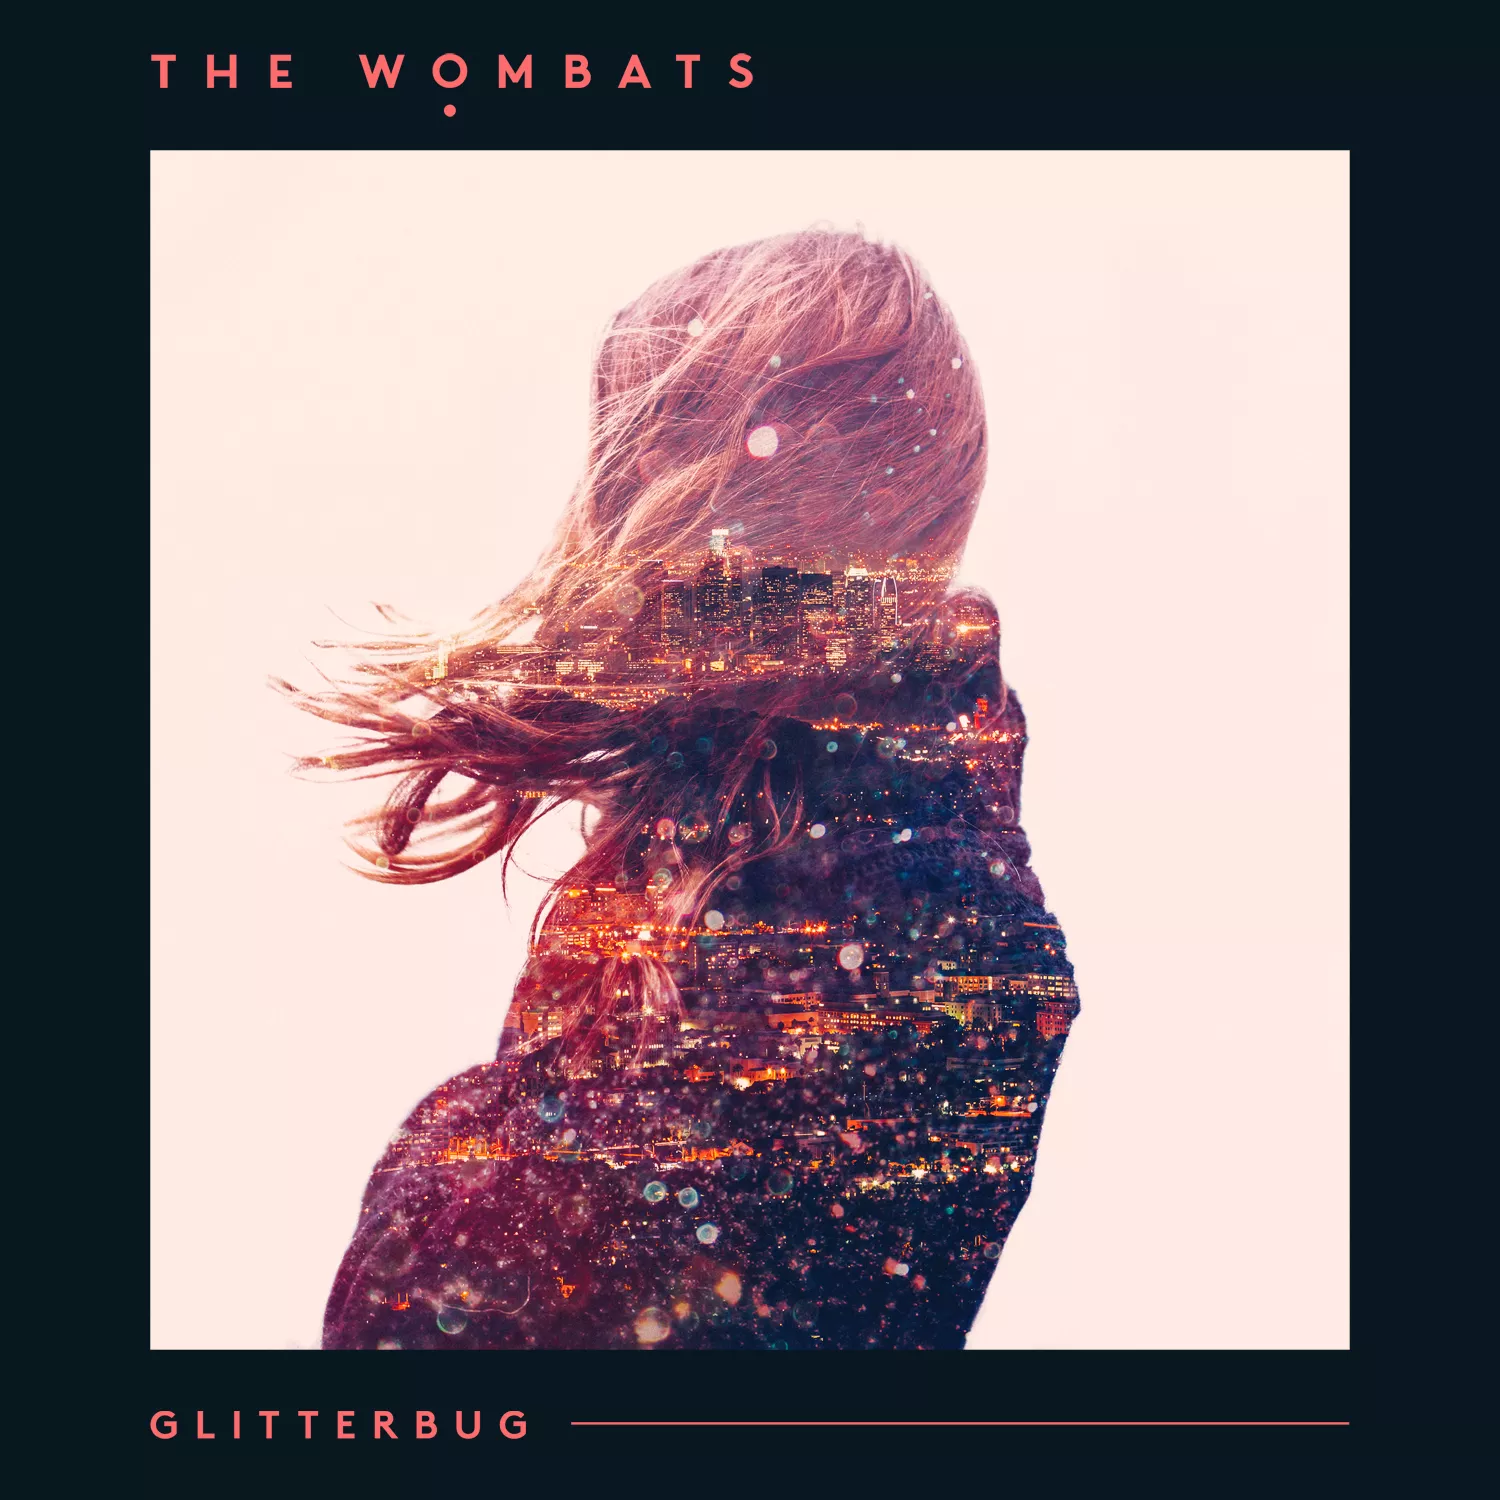 Glitterbug - The Wombats